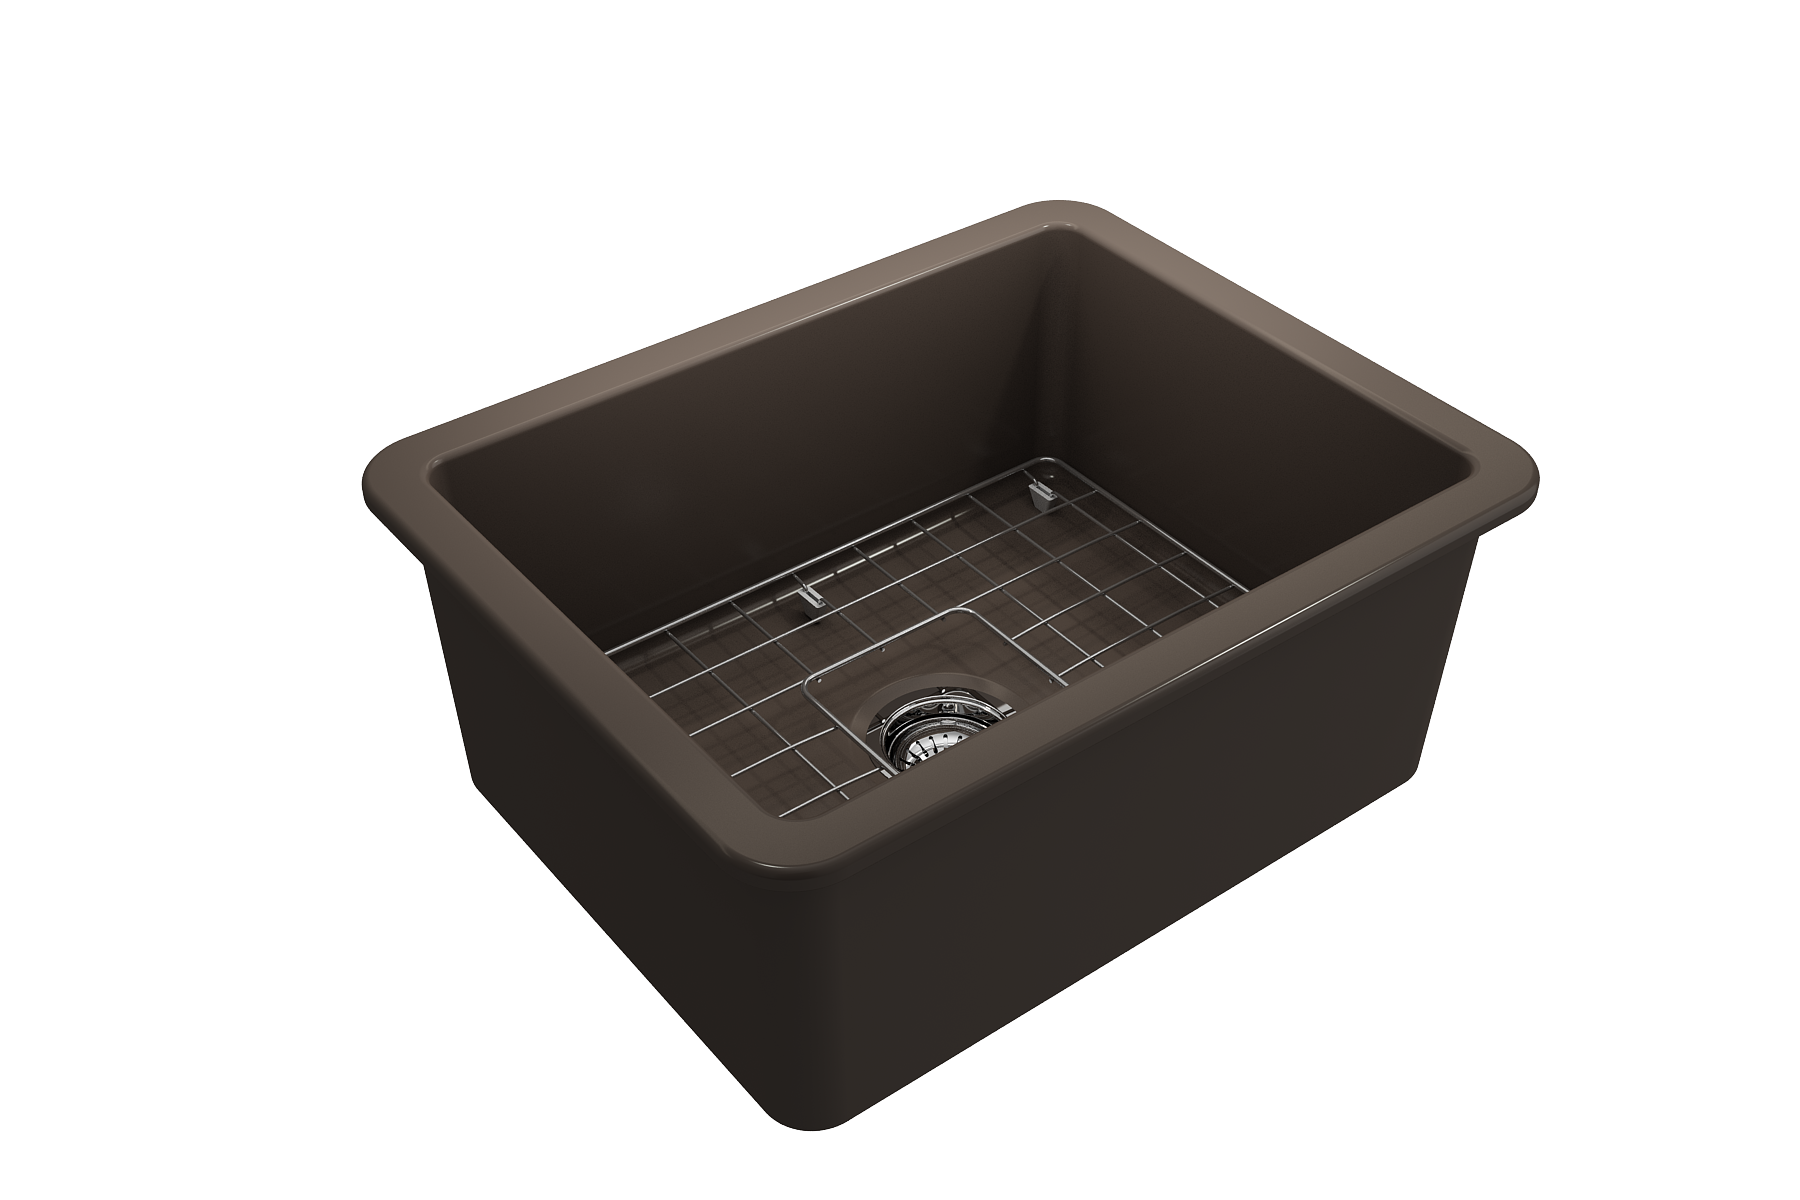 Bocchi Sotto 24" Fireclay Undermount or Drop-In Kitchen Sink